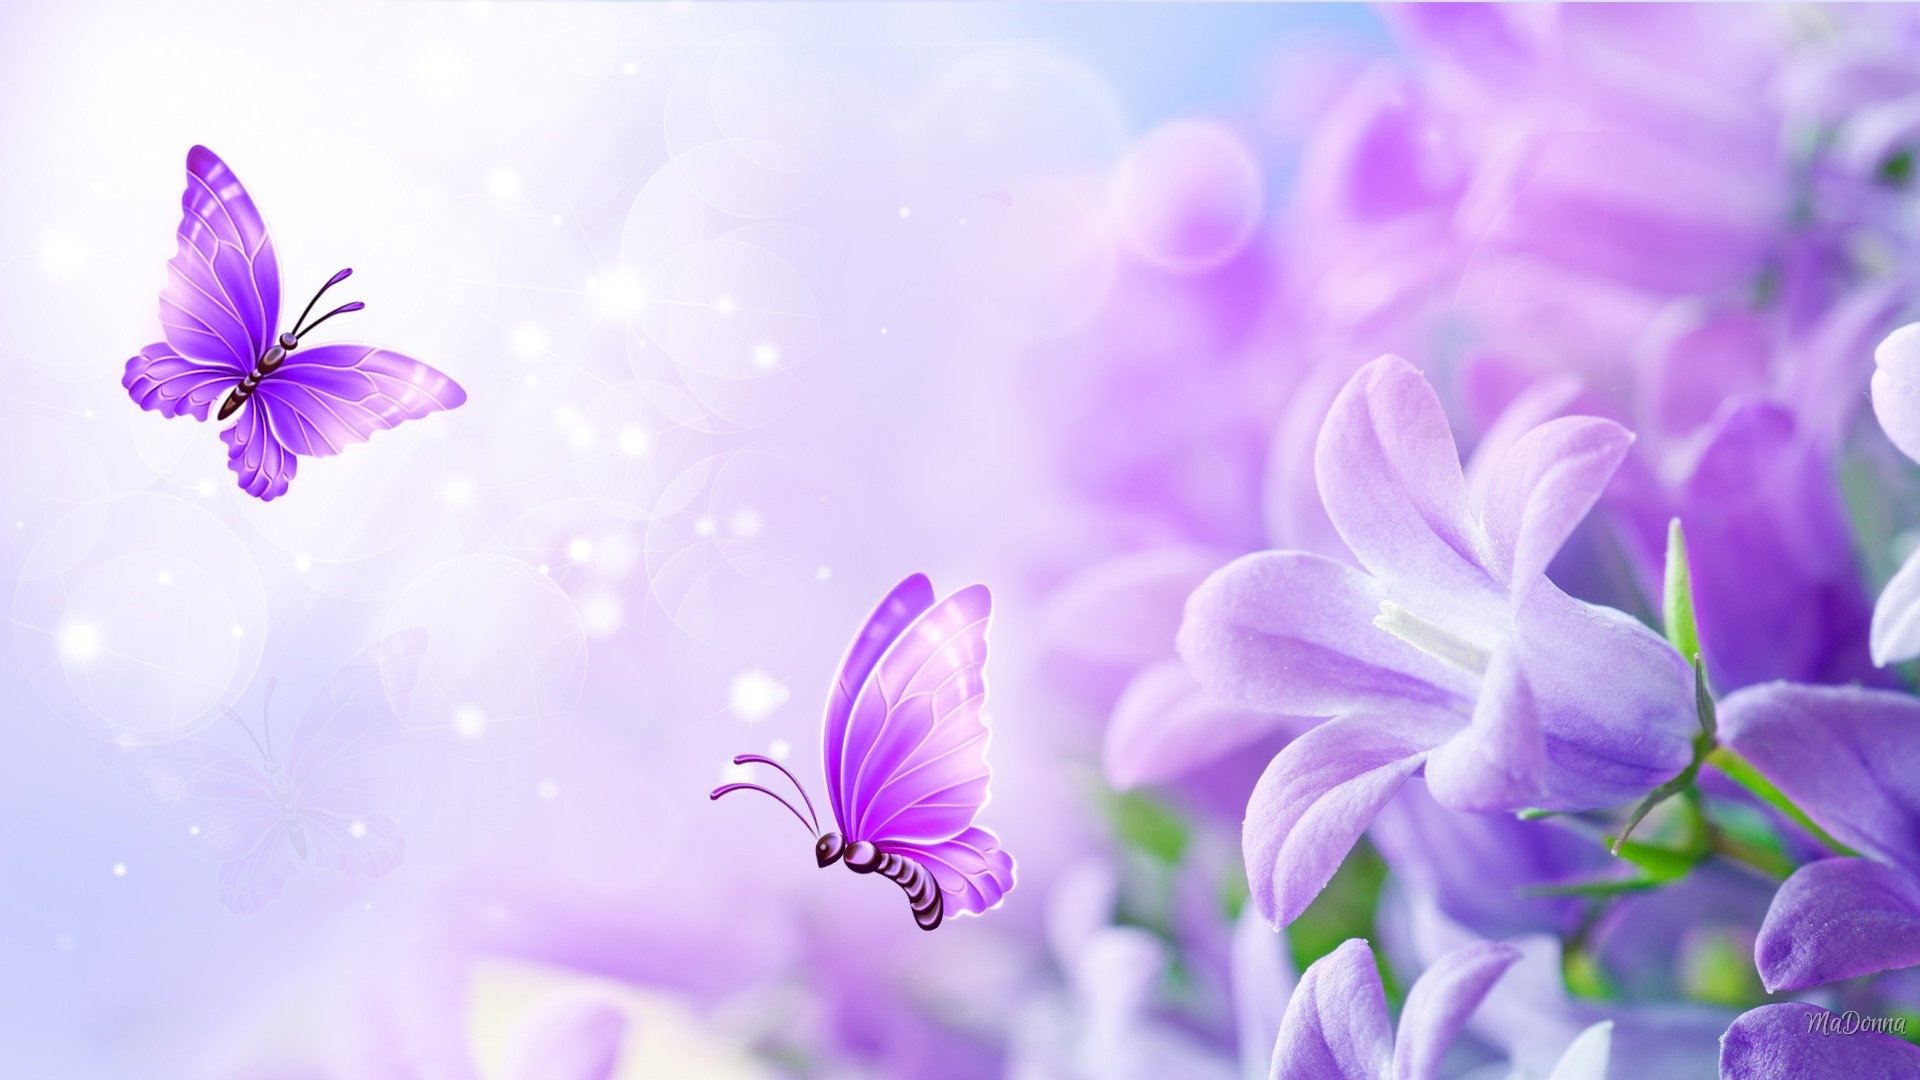 1920x1080, Bliss Soft Butterflies Pastel Summer Flowers - Purple Butterfly Pastel Purple Rose - HD Wallpaper 